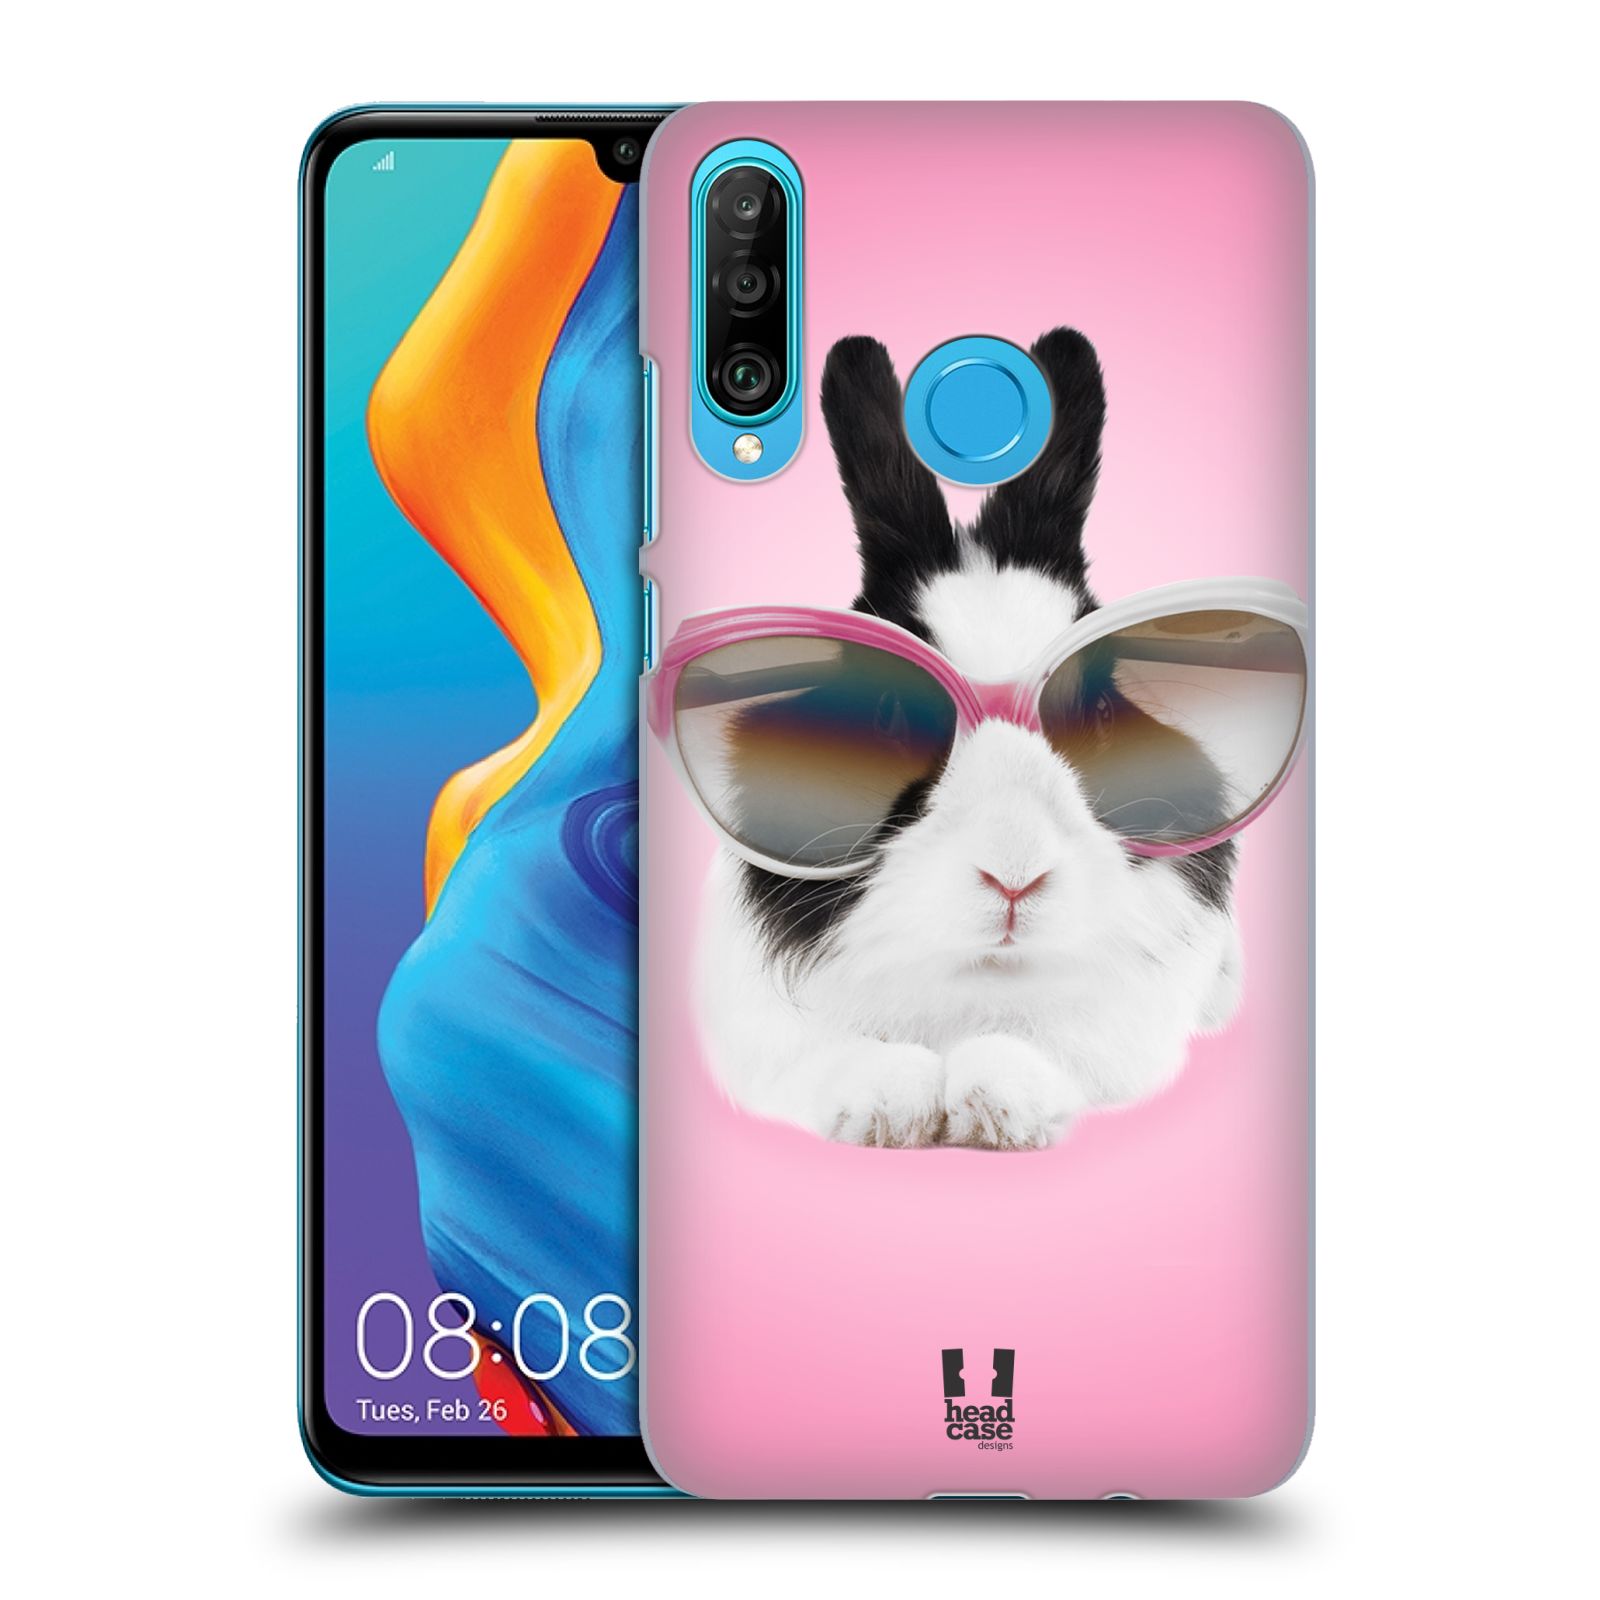 Pouzdro na mobil Huawei P30 LITE - HEAD CASE - vzor Legrační zvířátka roztomilý králíček s brýlemi růžová